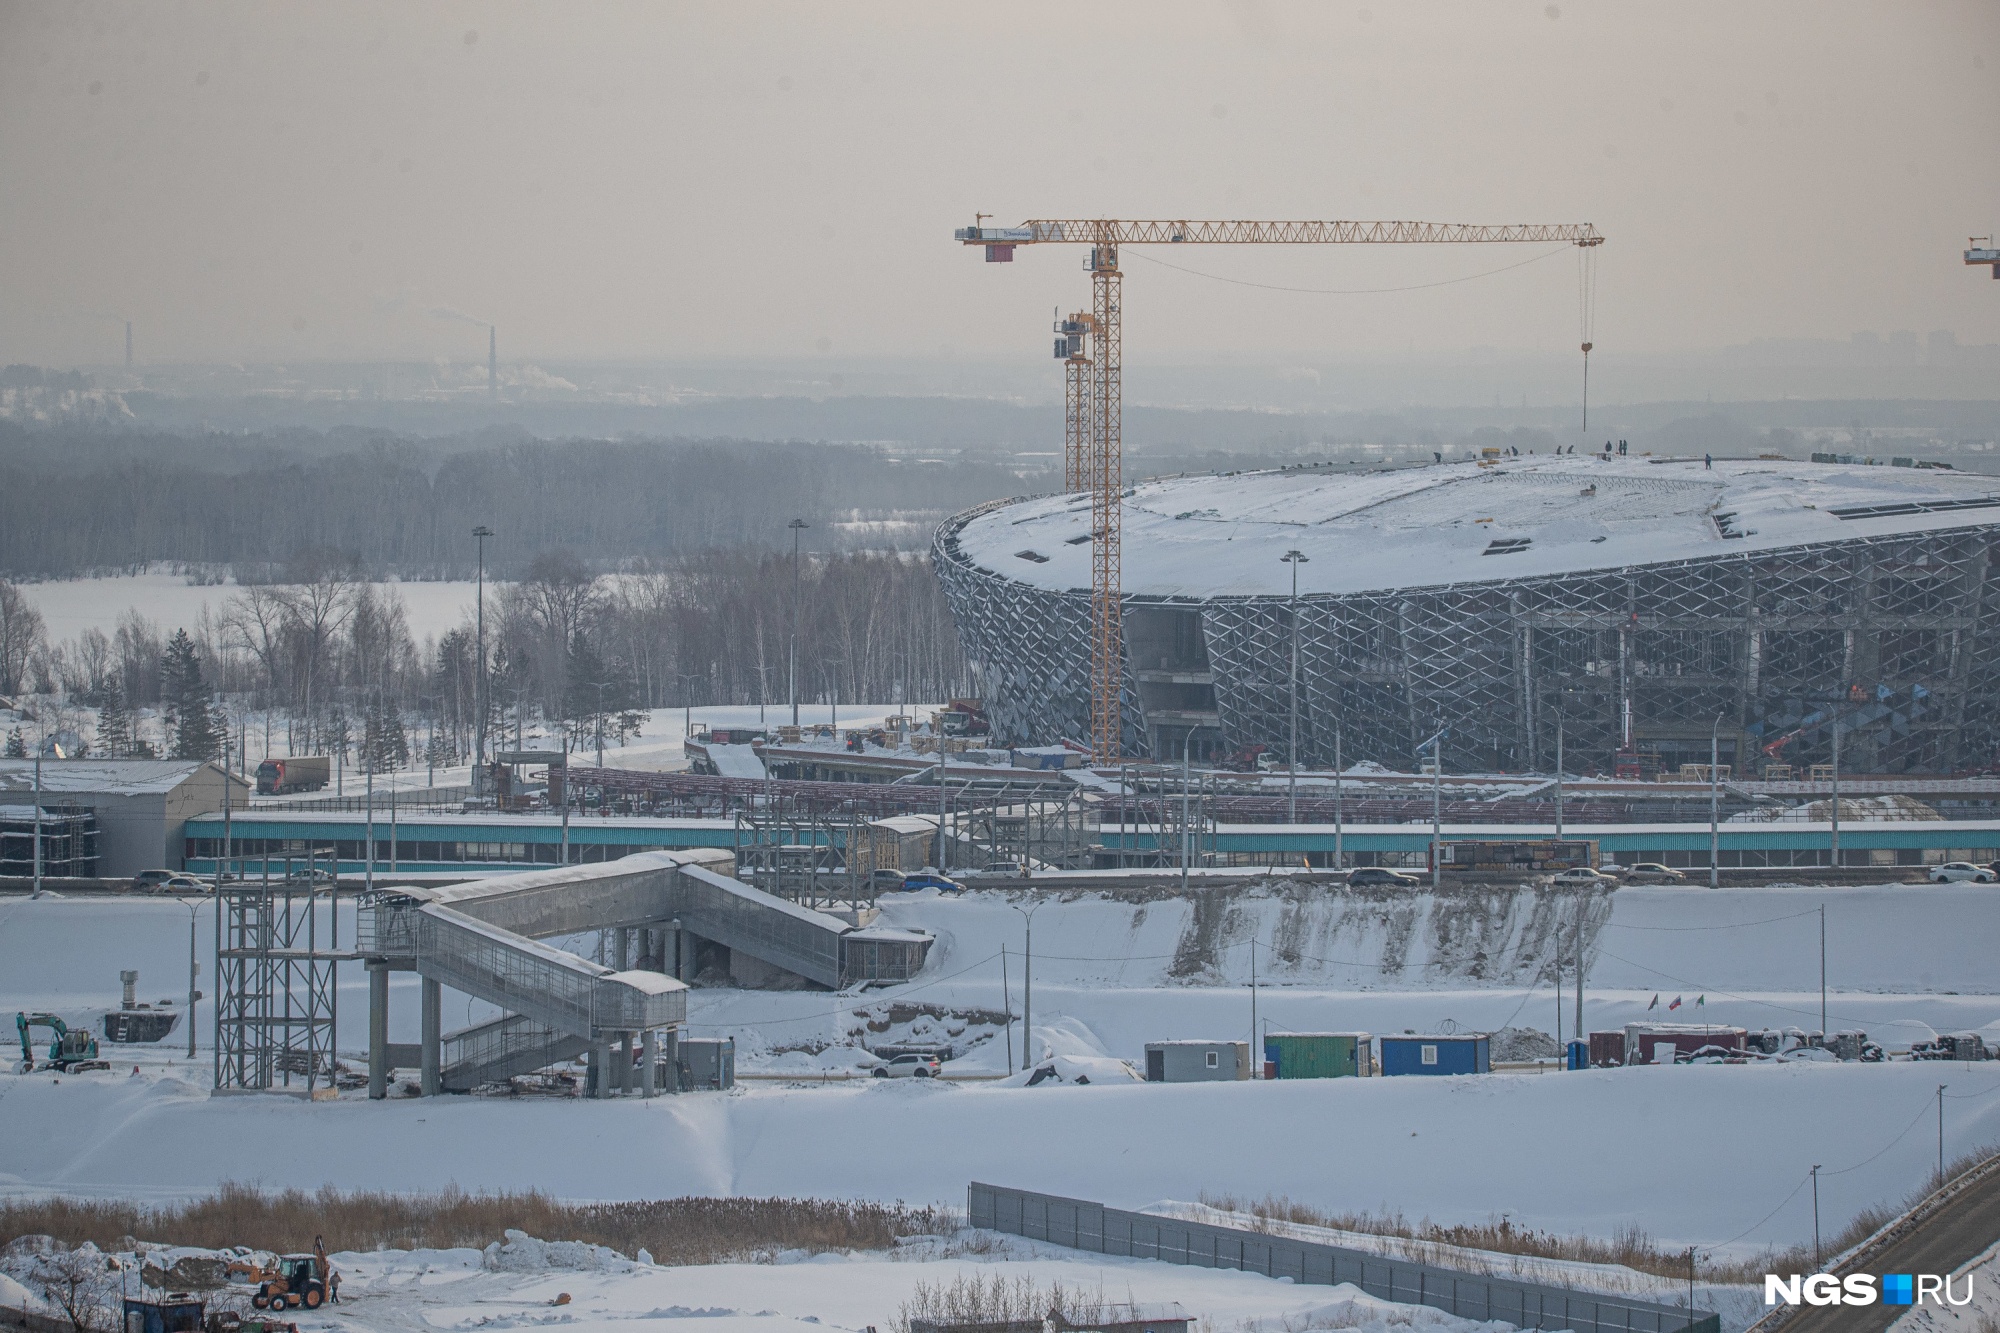 Новый мост хотят построить в Новосибирске: он будет недалеко от строящегося ЛДС